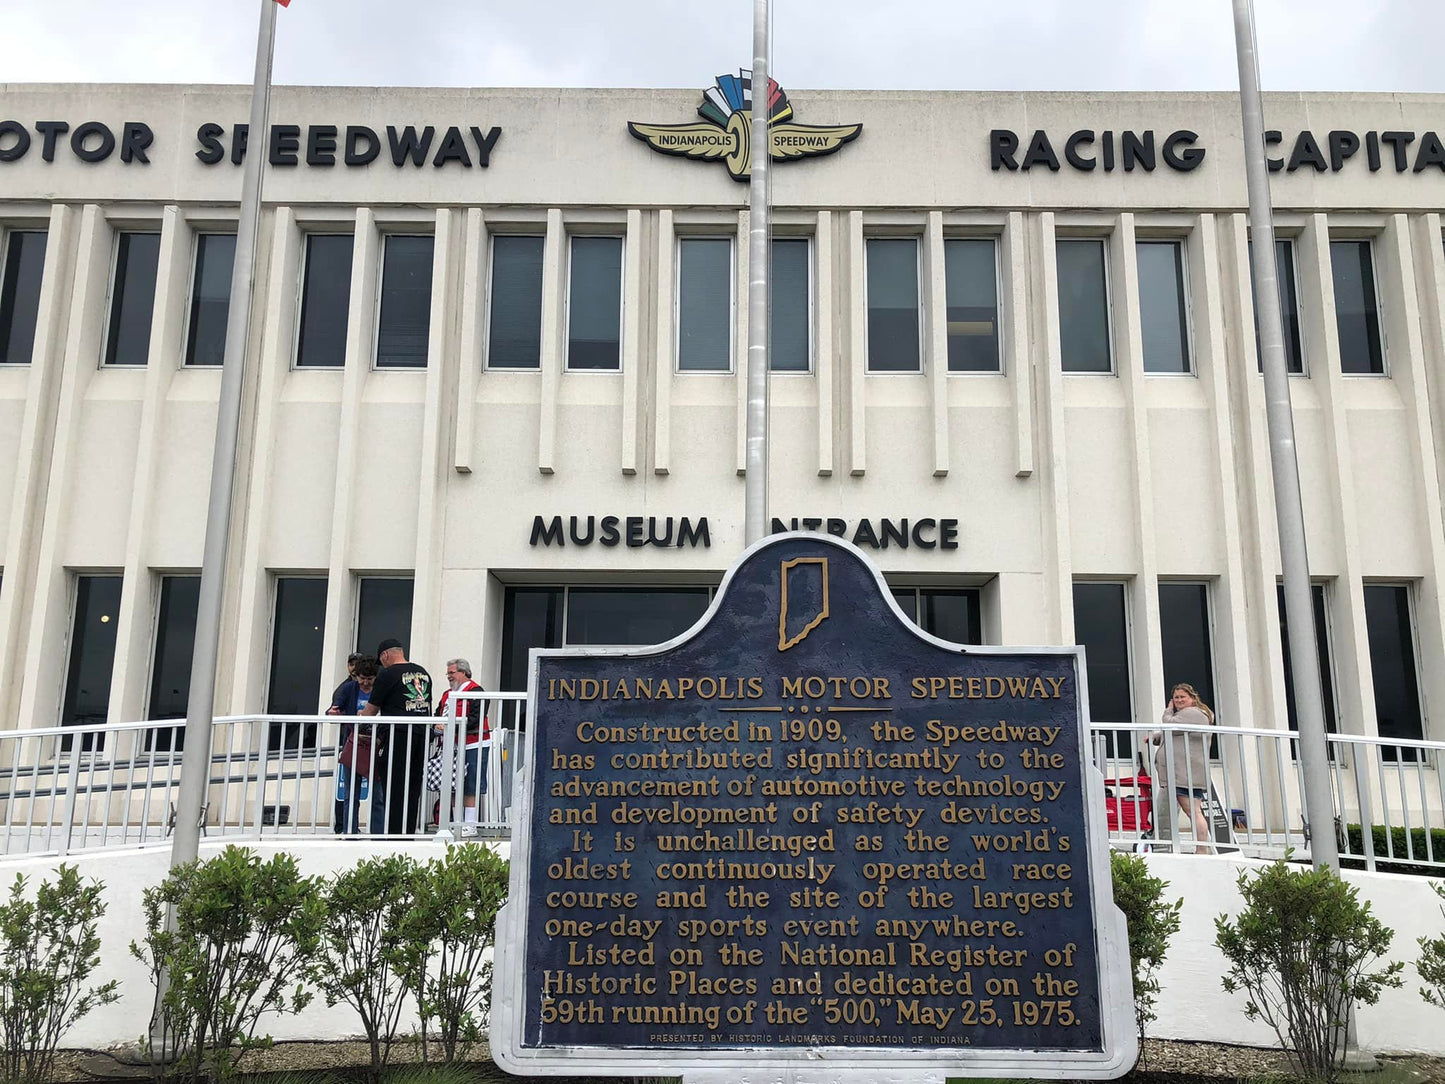 Indianapolis Motor Speedway Museum ! Un superbe musée à découvrir avant l'Indy 500 !